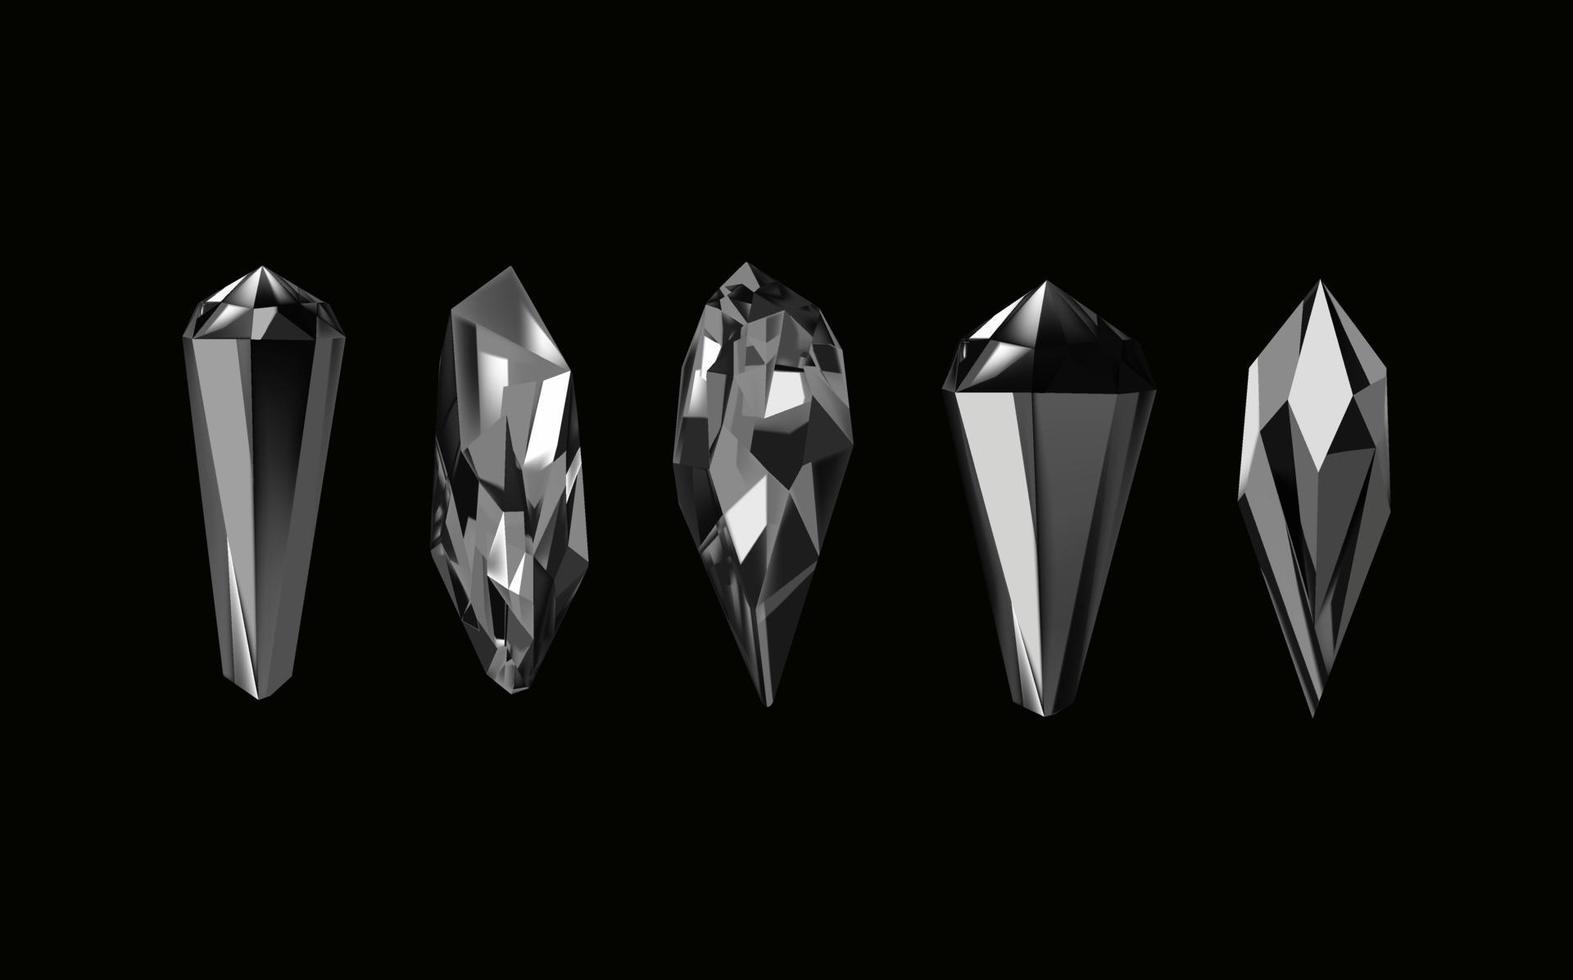 ein Sammlung von Bilder von schwarz Diamanten von verschiedene geometrisch Formen und Größen.Glas glänzend Kristalle mit anders Schatten reflektieren licht.vektor realistisch einstellen von glühen Edelstein oder bunt Eis. vektor